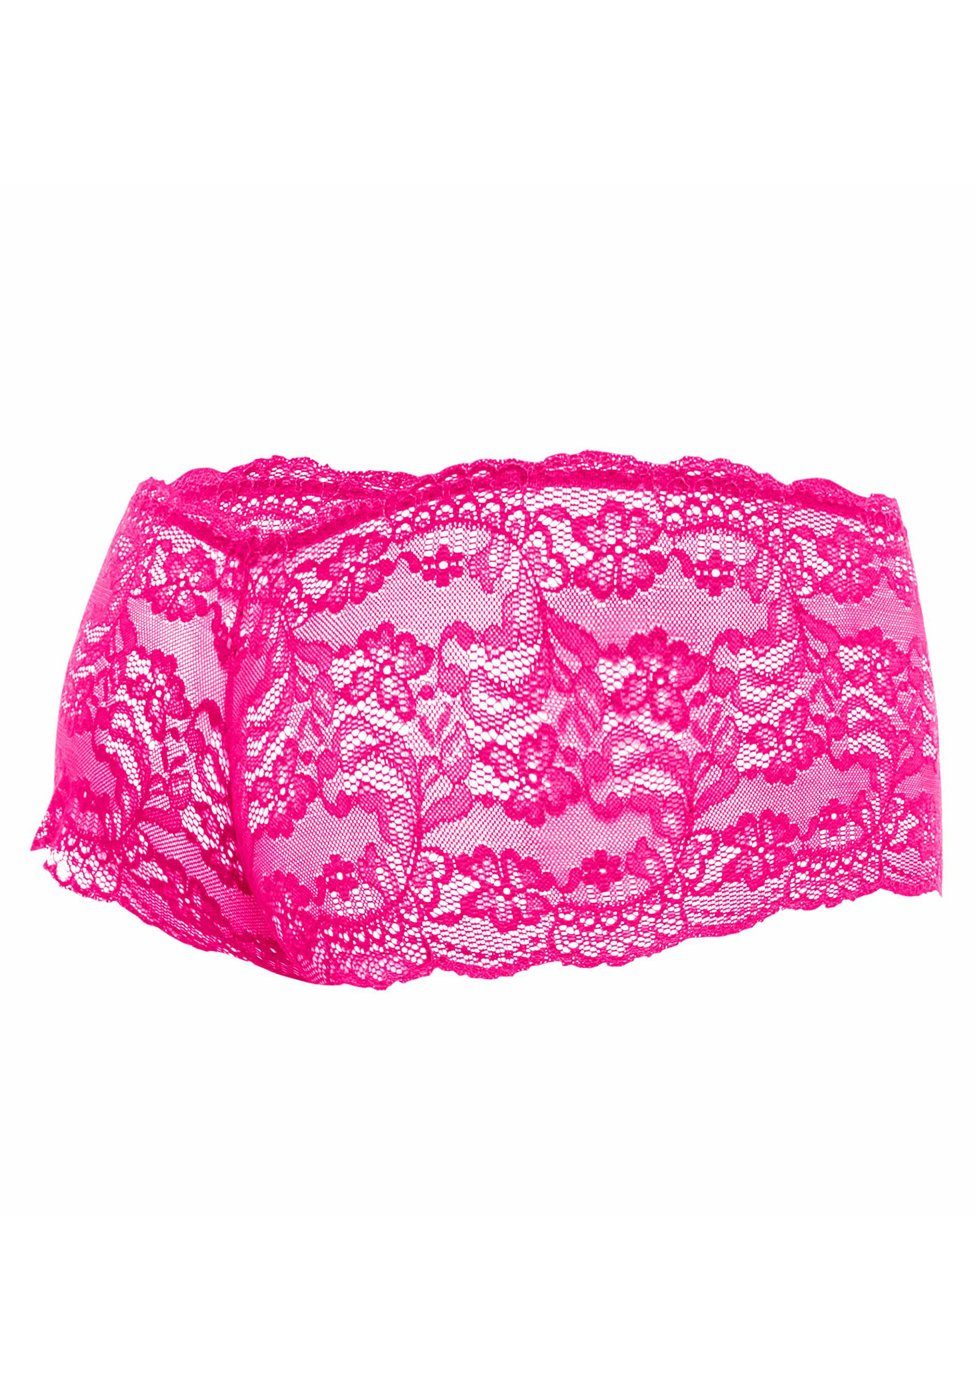 MOB Eroticwear Boxershorts Boxershorts aus pink - Spitze